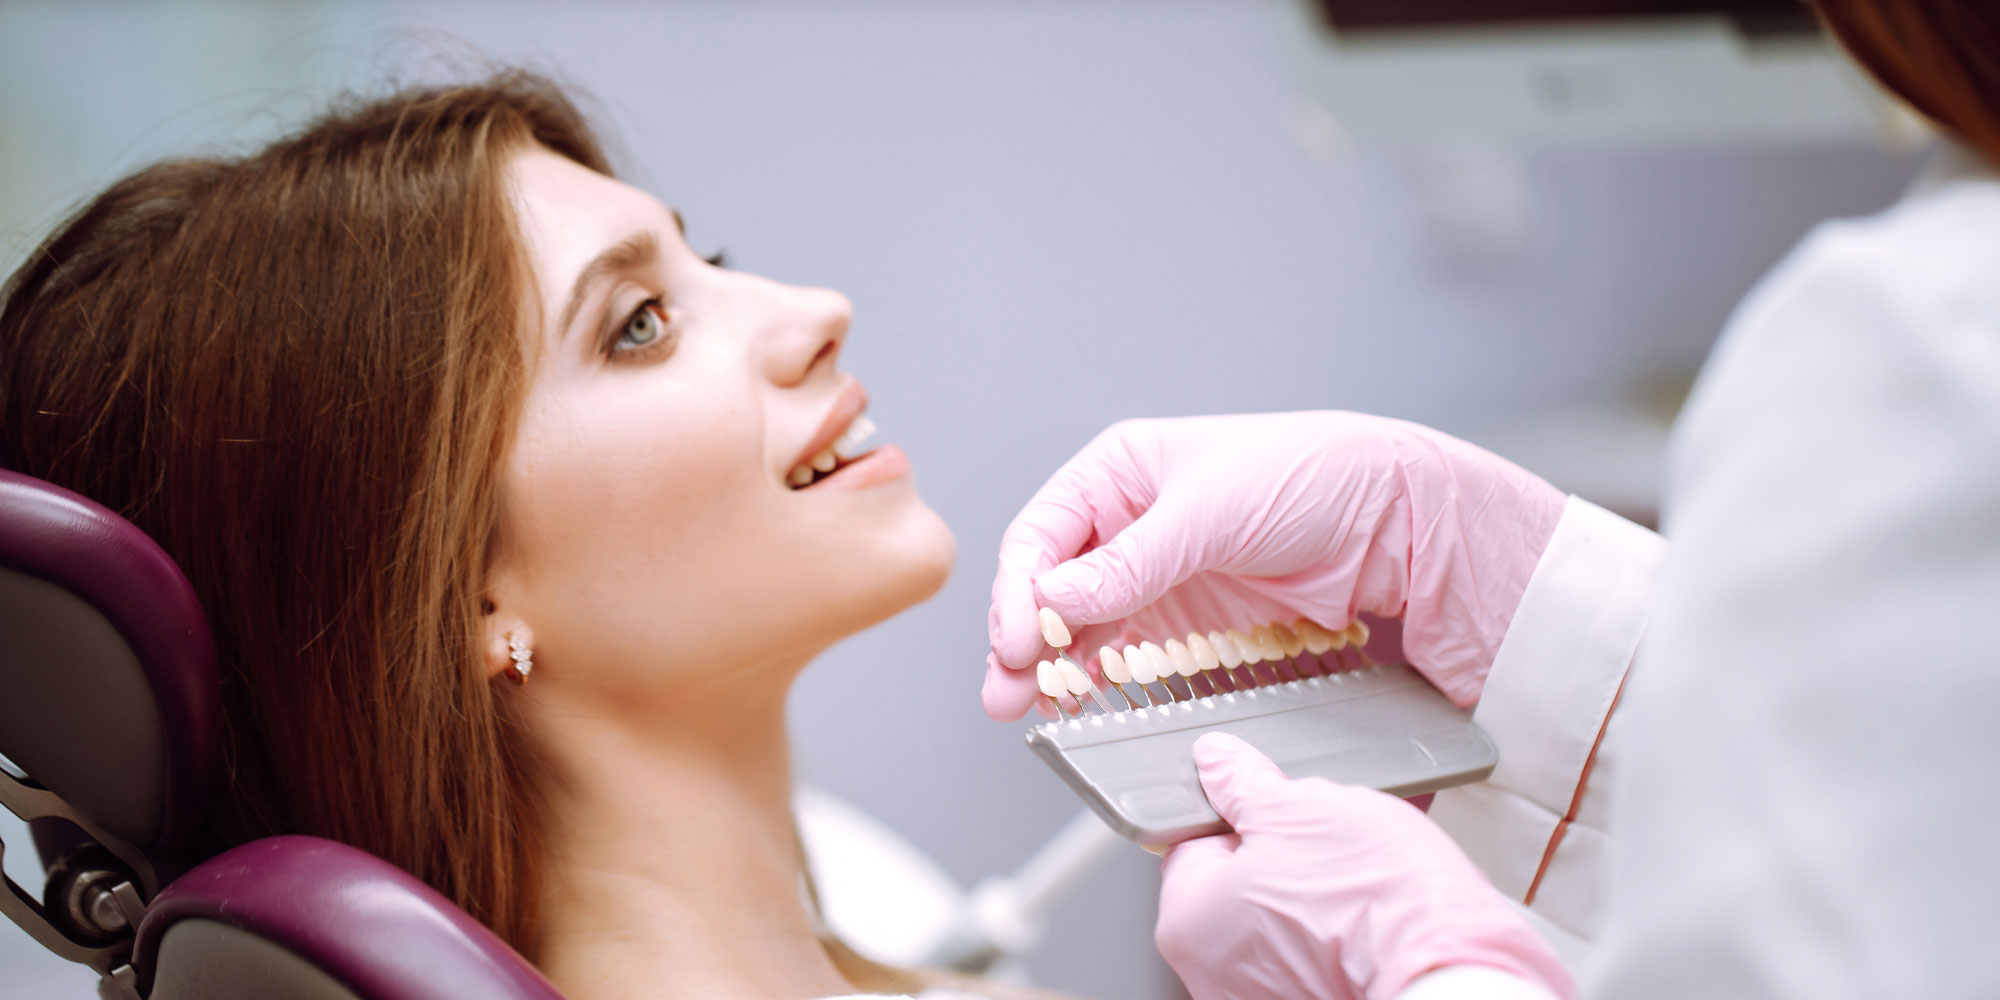 dentist showing veneer options